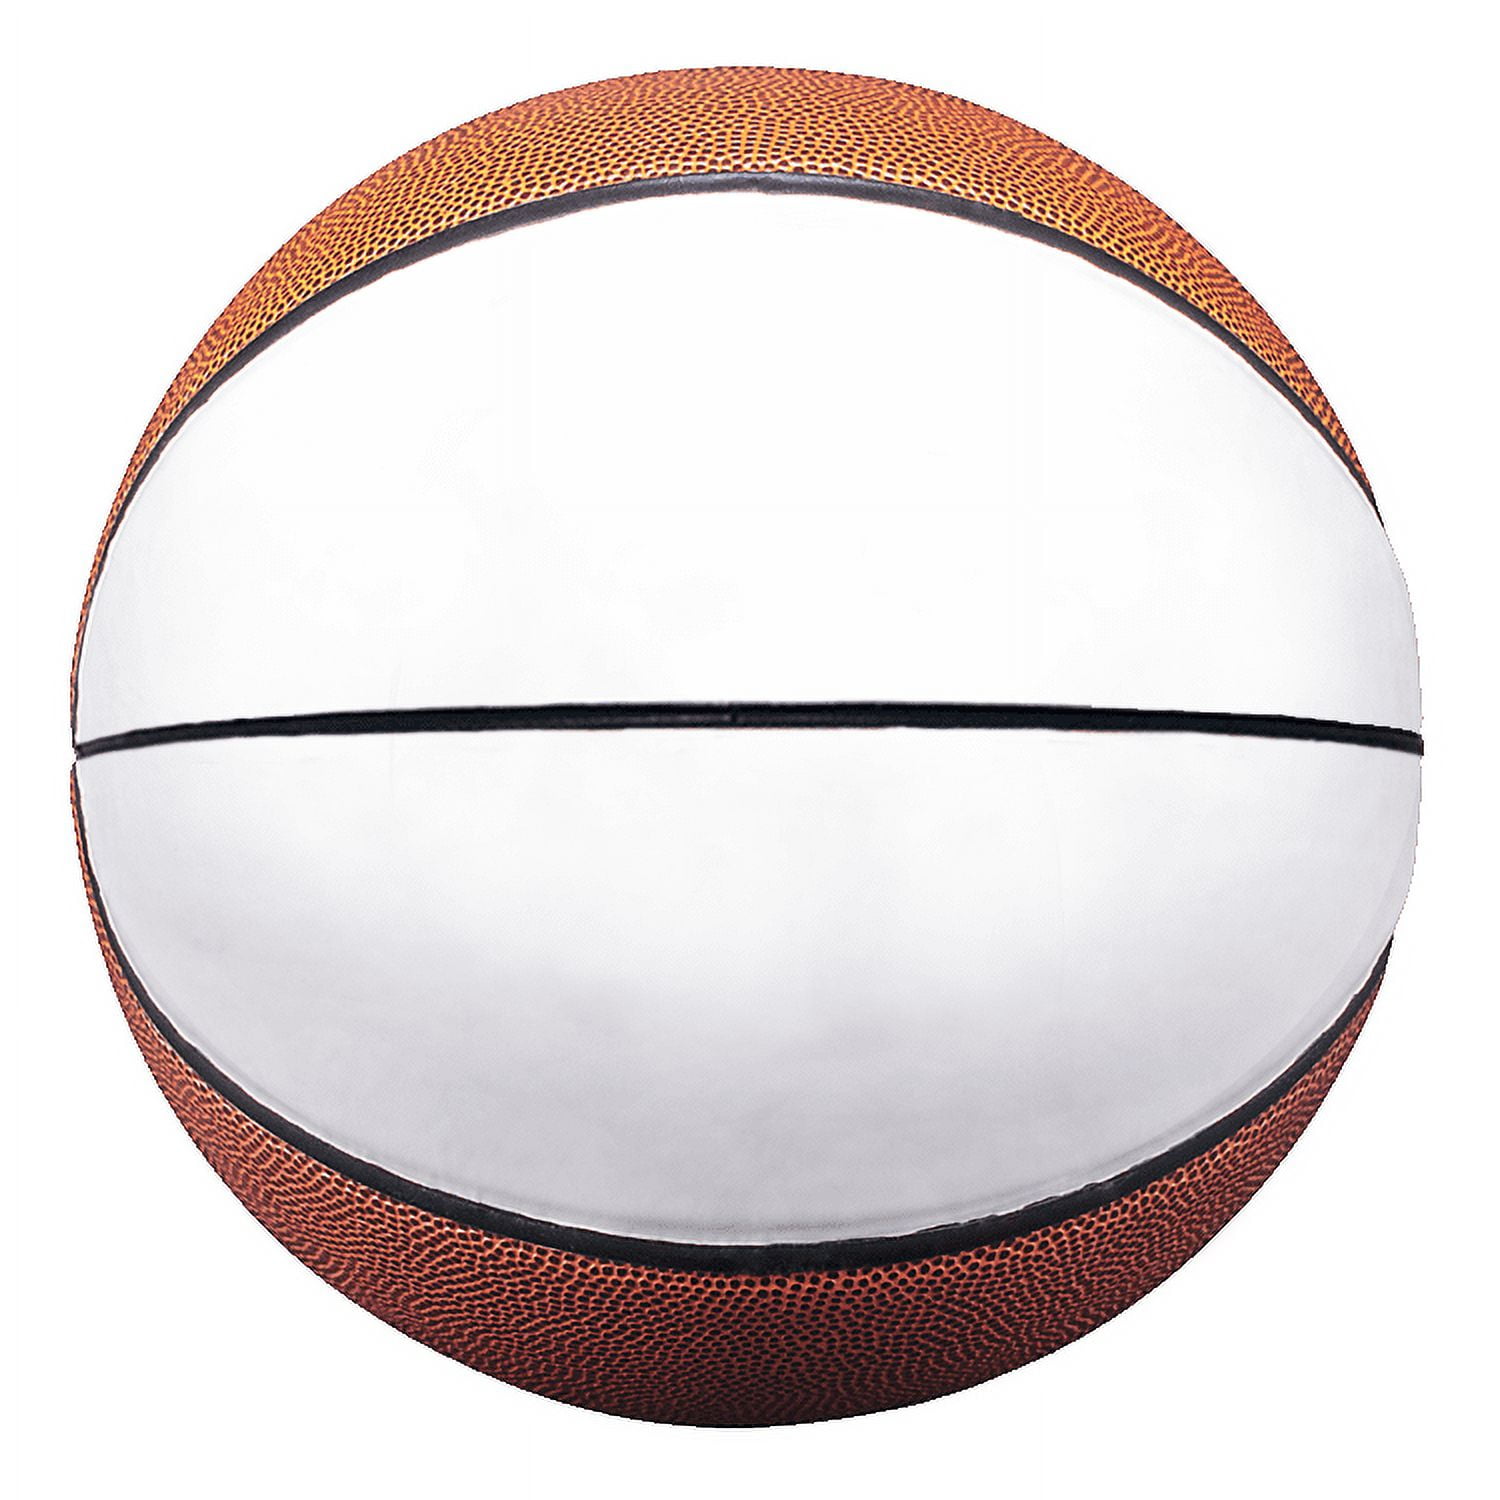 Panneau de basket-ball — Wikipédia